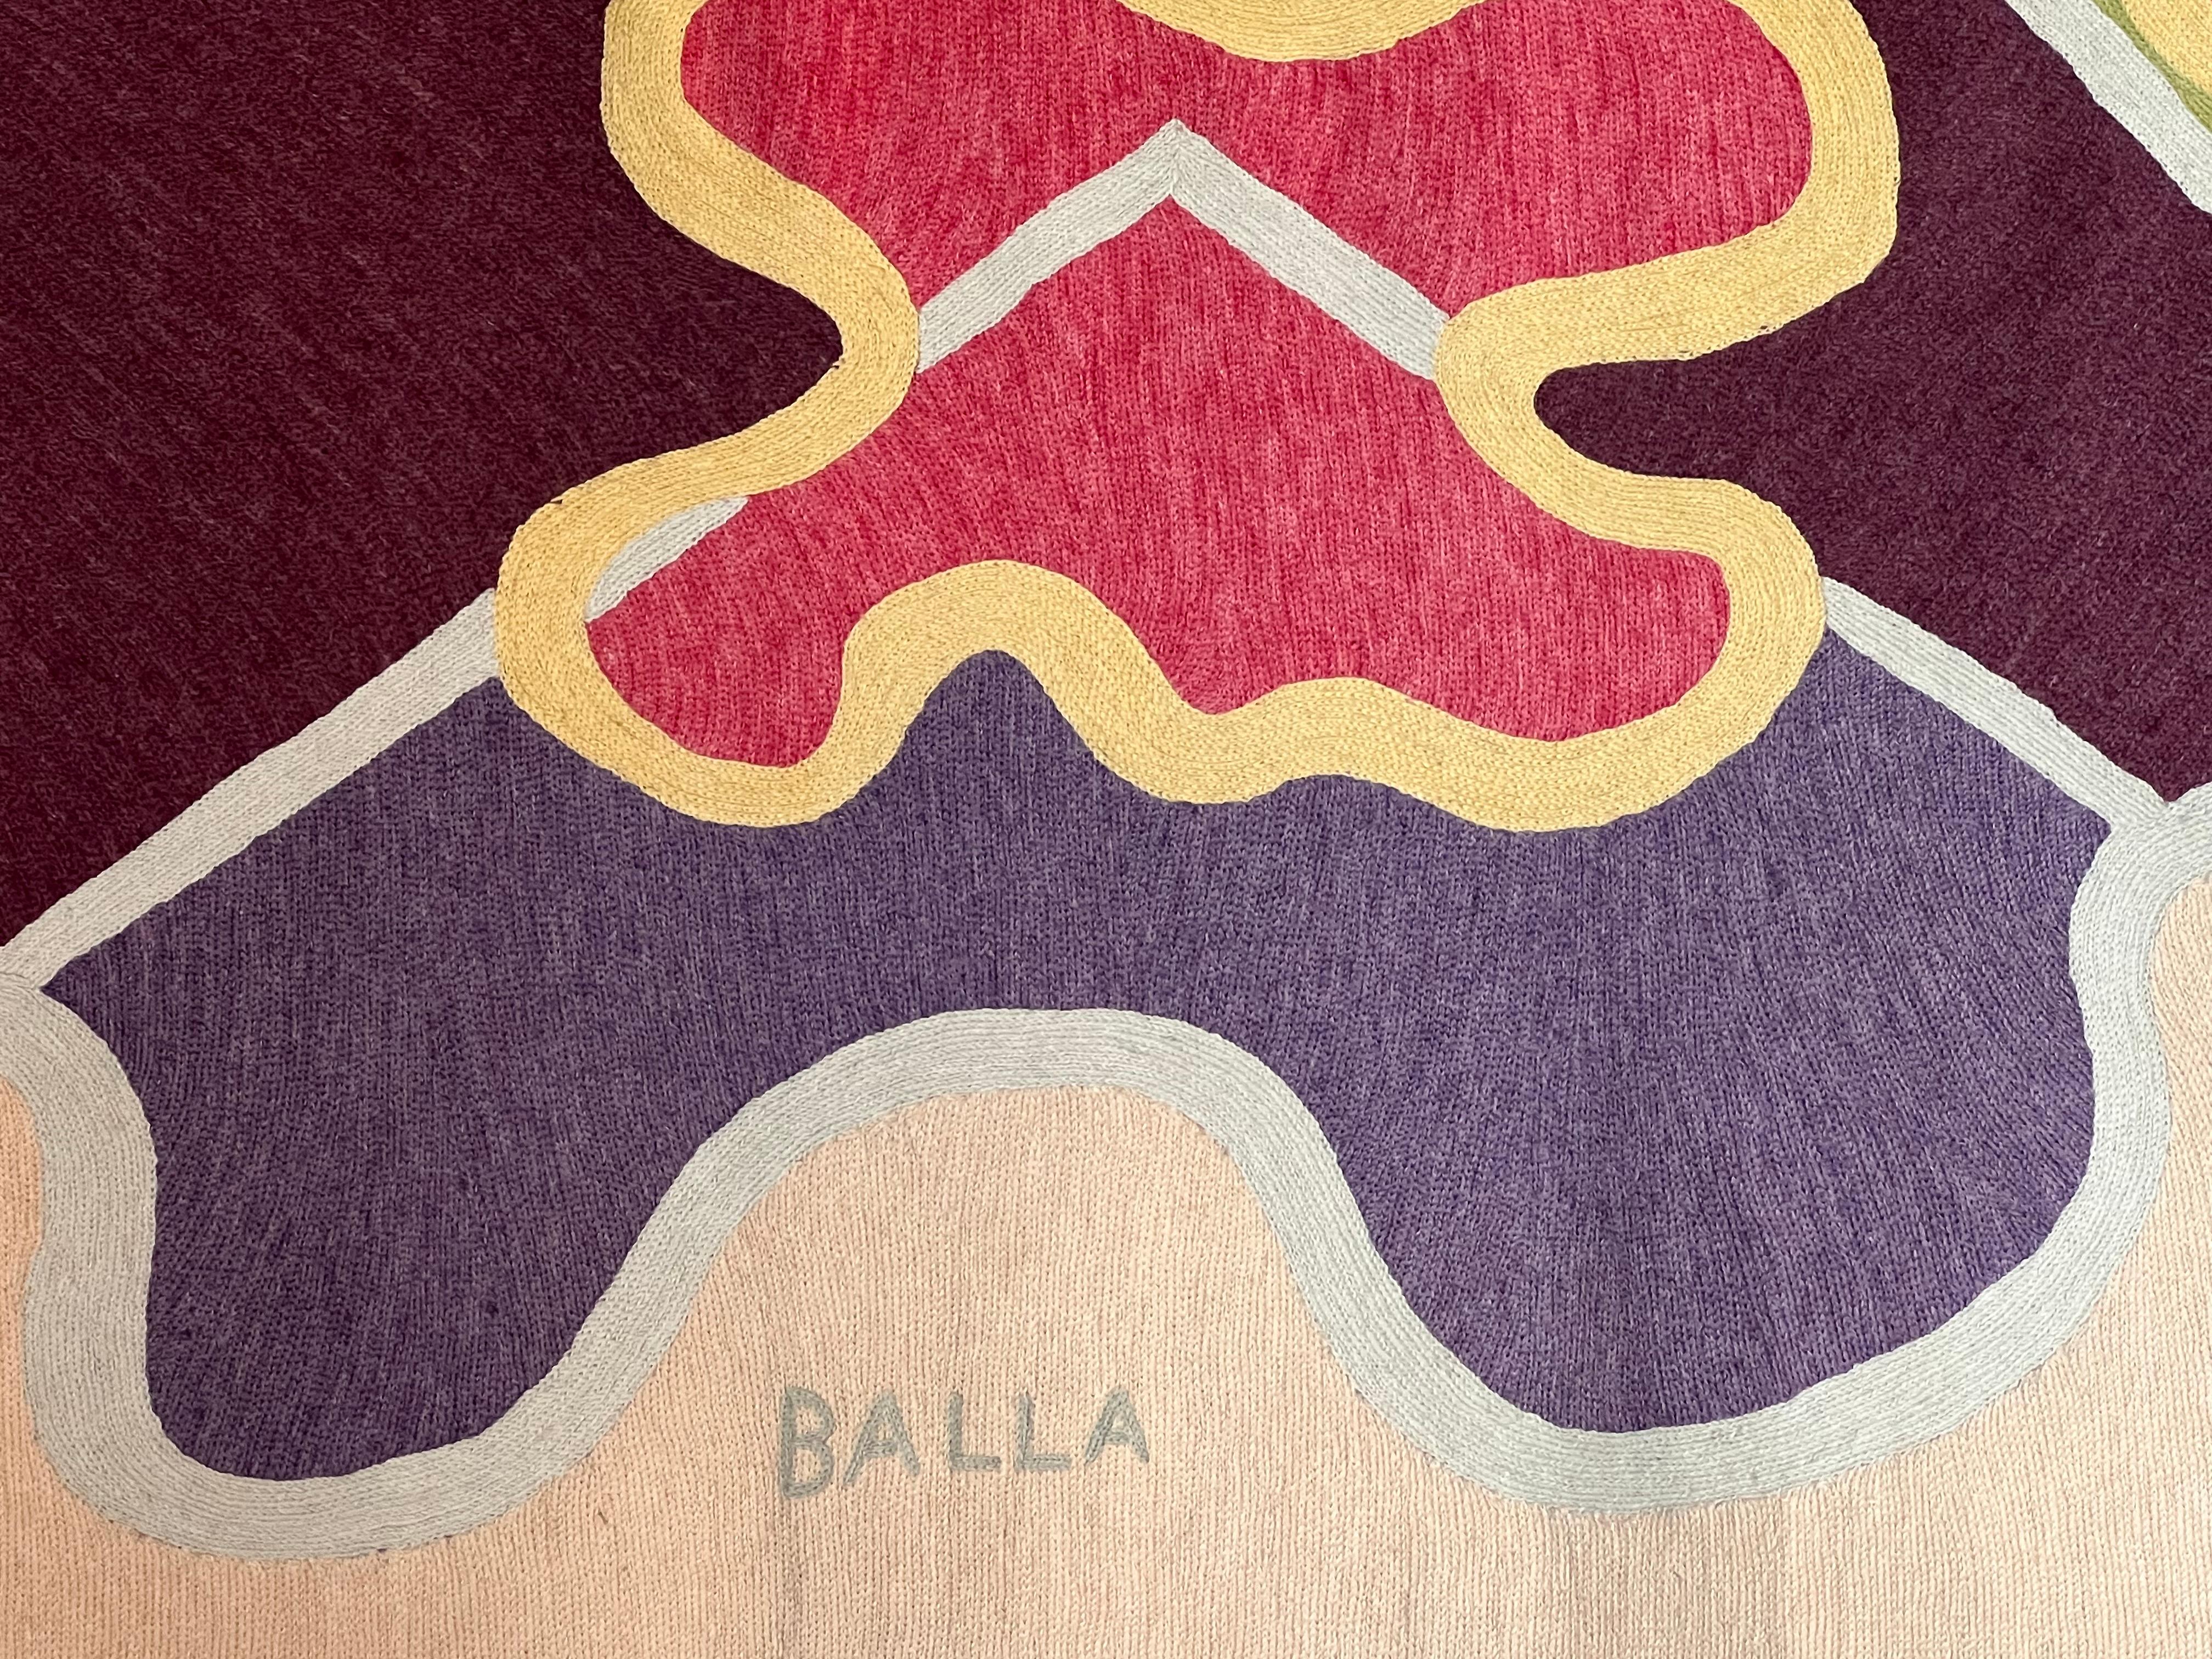 Handgewebter Wandteppich im Kettenstich mit reinen Wollgarnen auf Baumwollgewebe. Dank der Bereitschaft der Töchter von Giacomo Balla, Luce und Elica, die Elio Palmisano  die von ihrem Vater entworfenen Entwürfe für Textilien, die nur in der